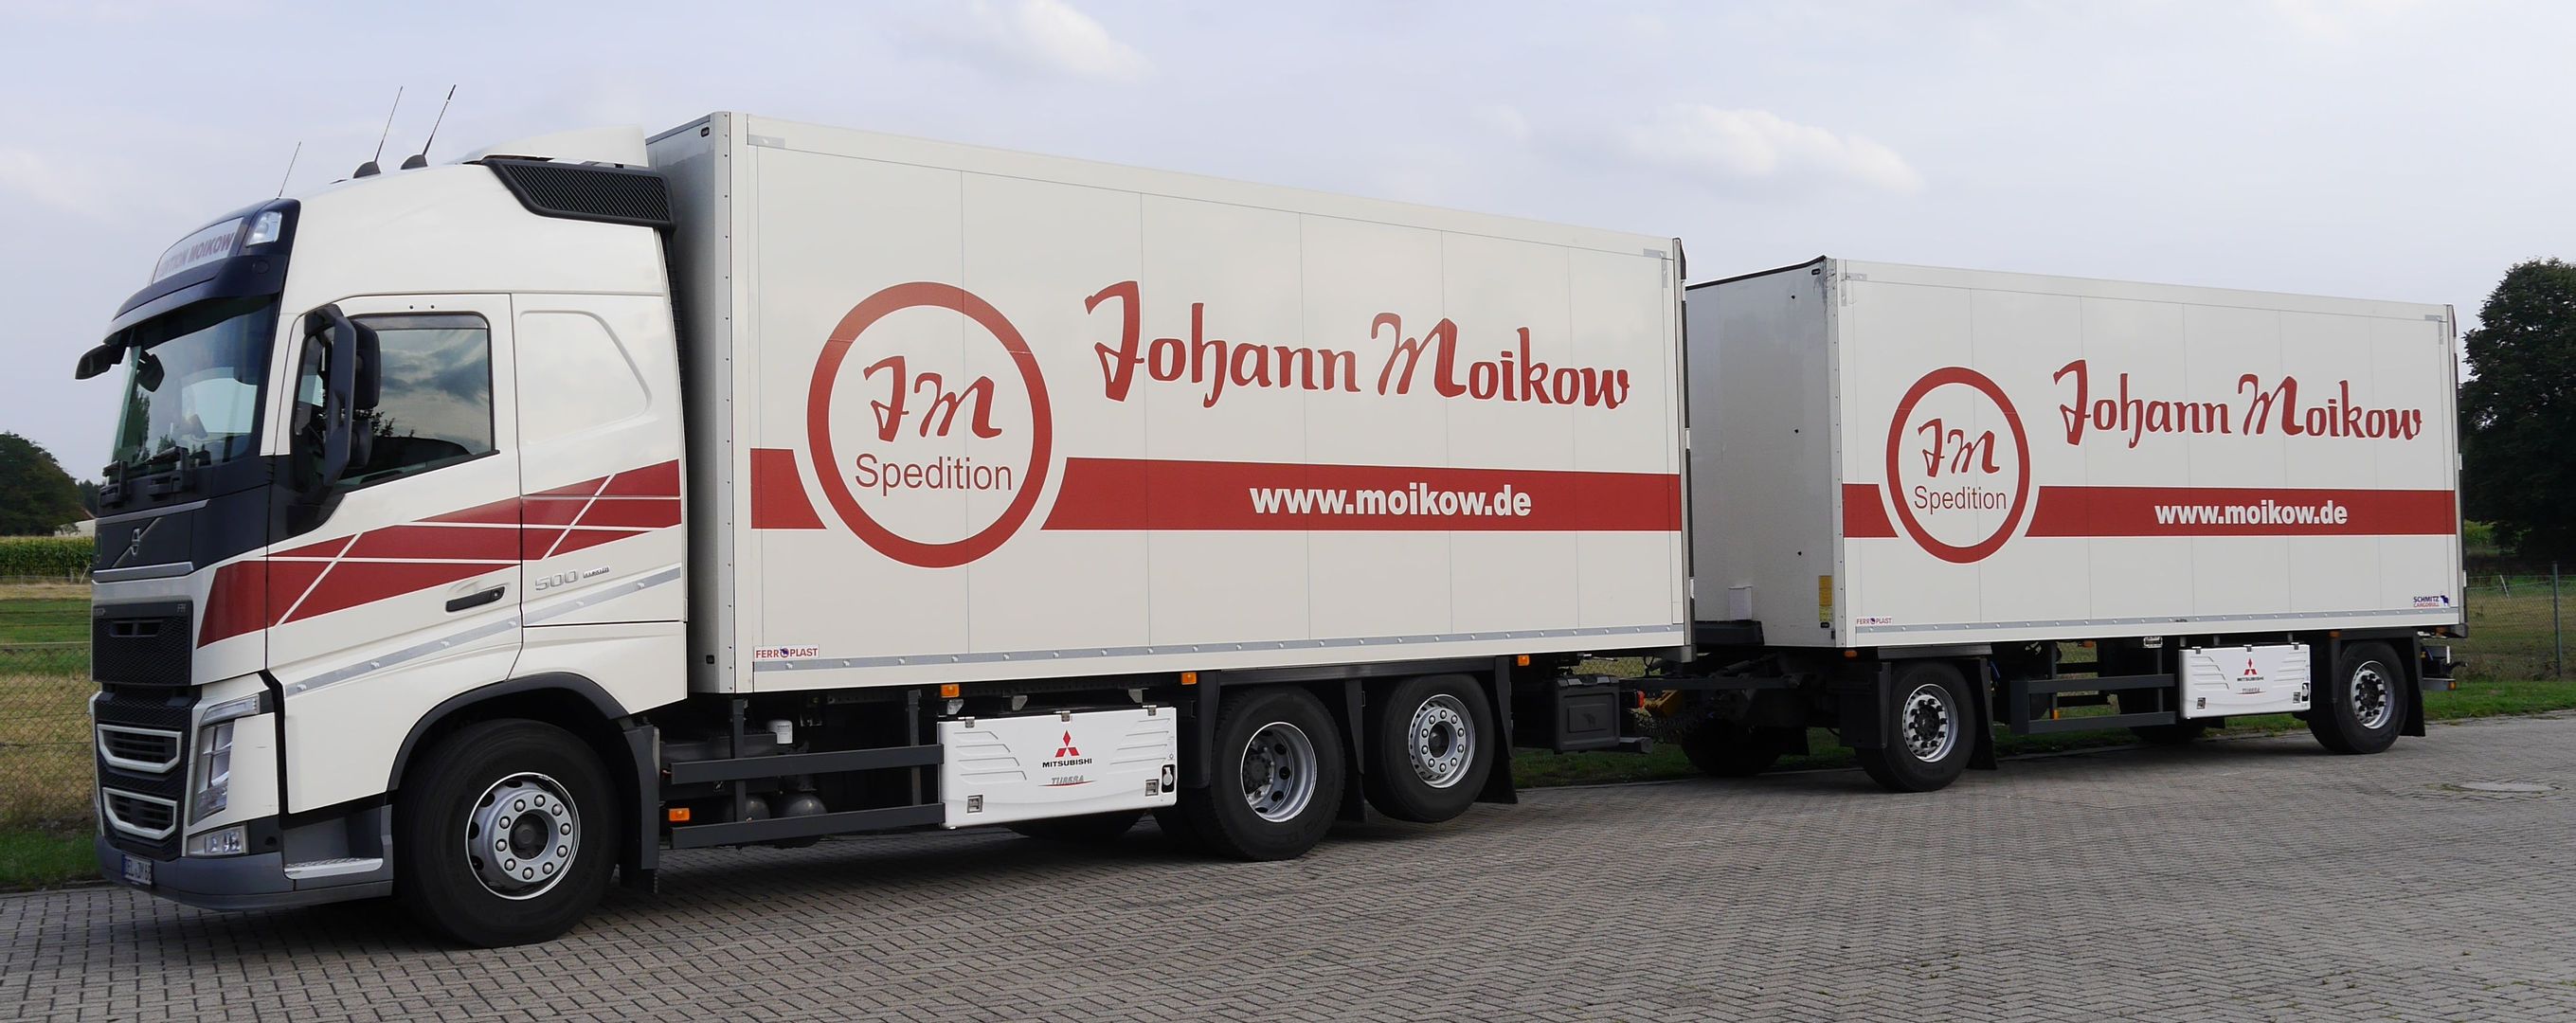 Leistungen | Johann Moikow GmbH & Co. - Spedition